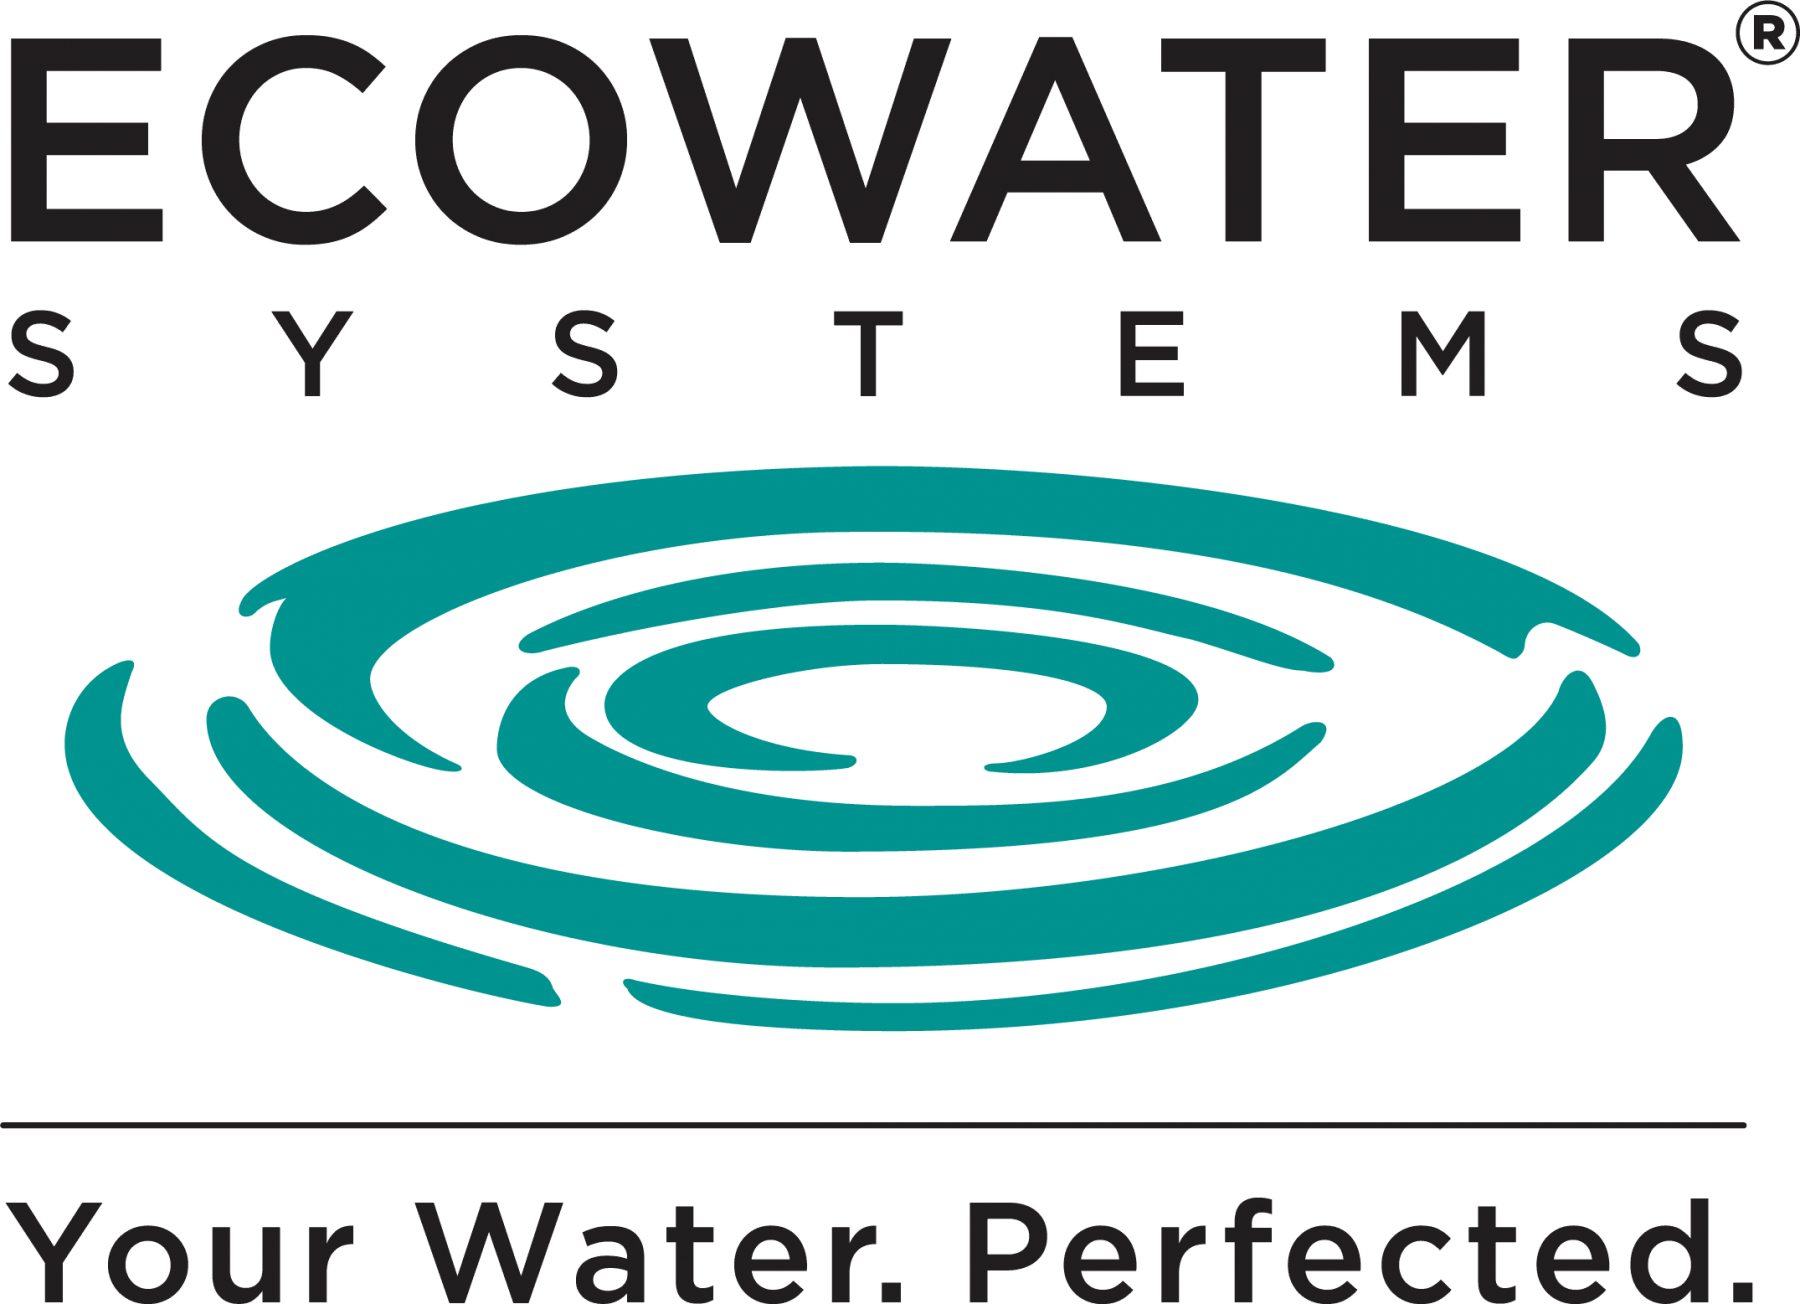 Adoucisseur d'eau de robinet : mode d'emploi - Ecowater